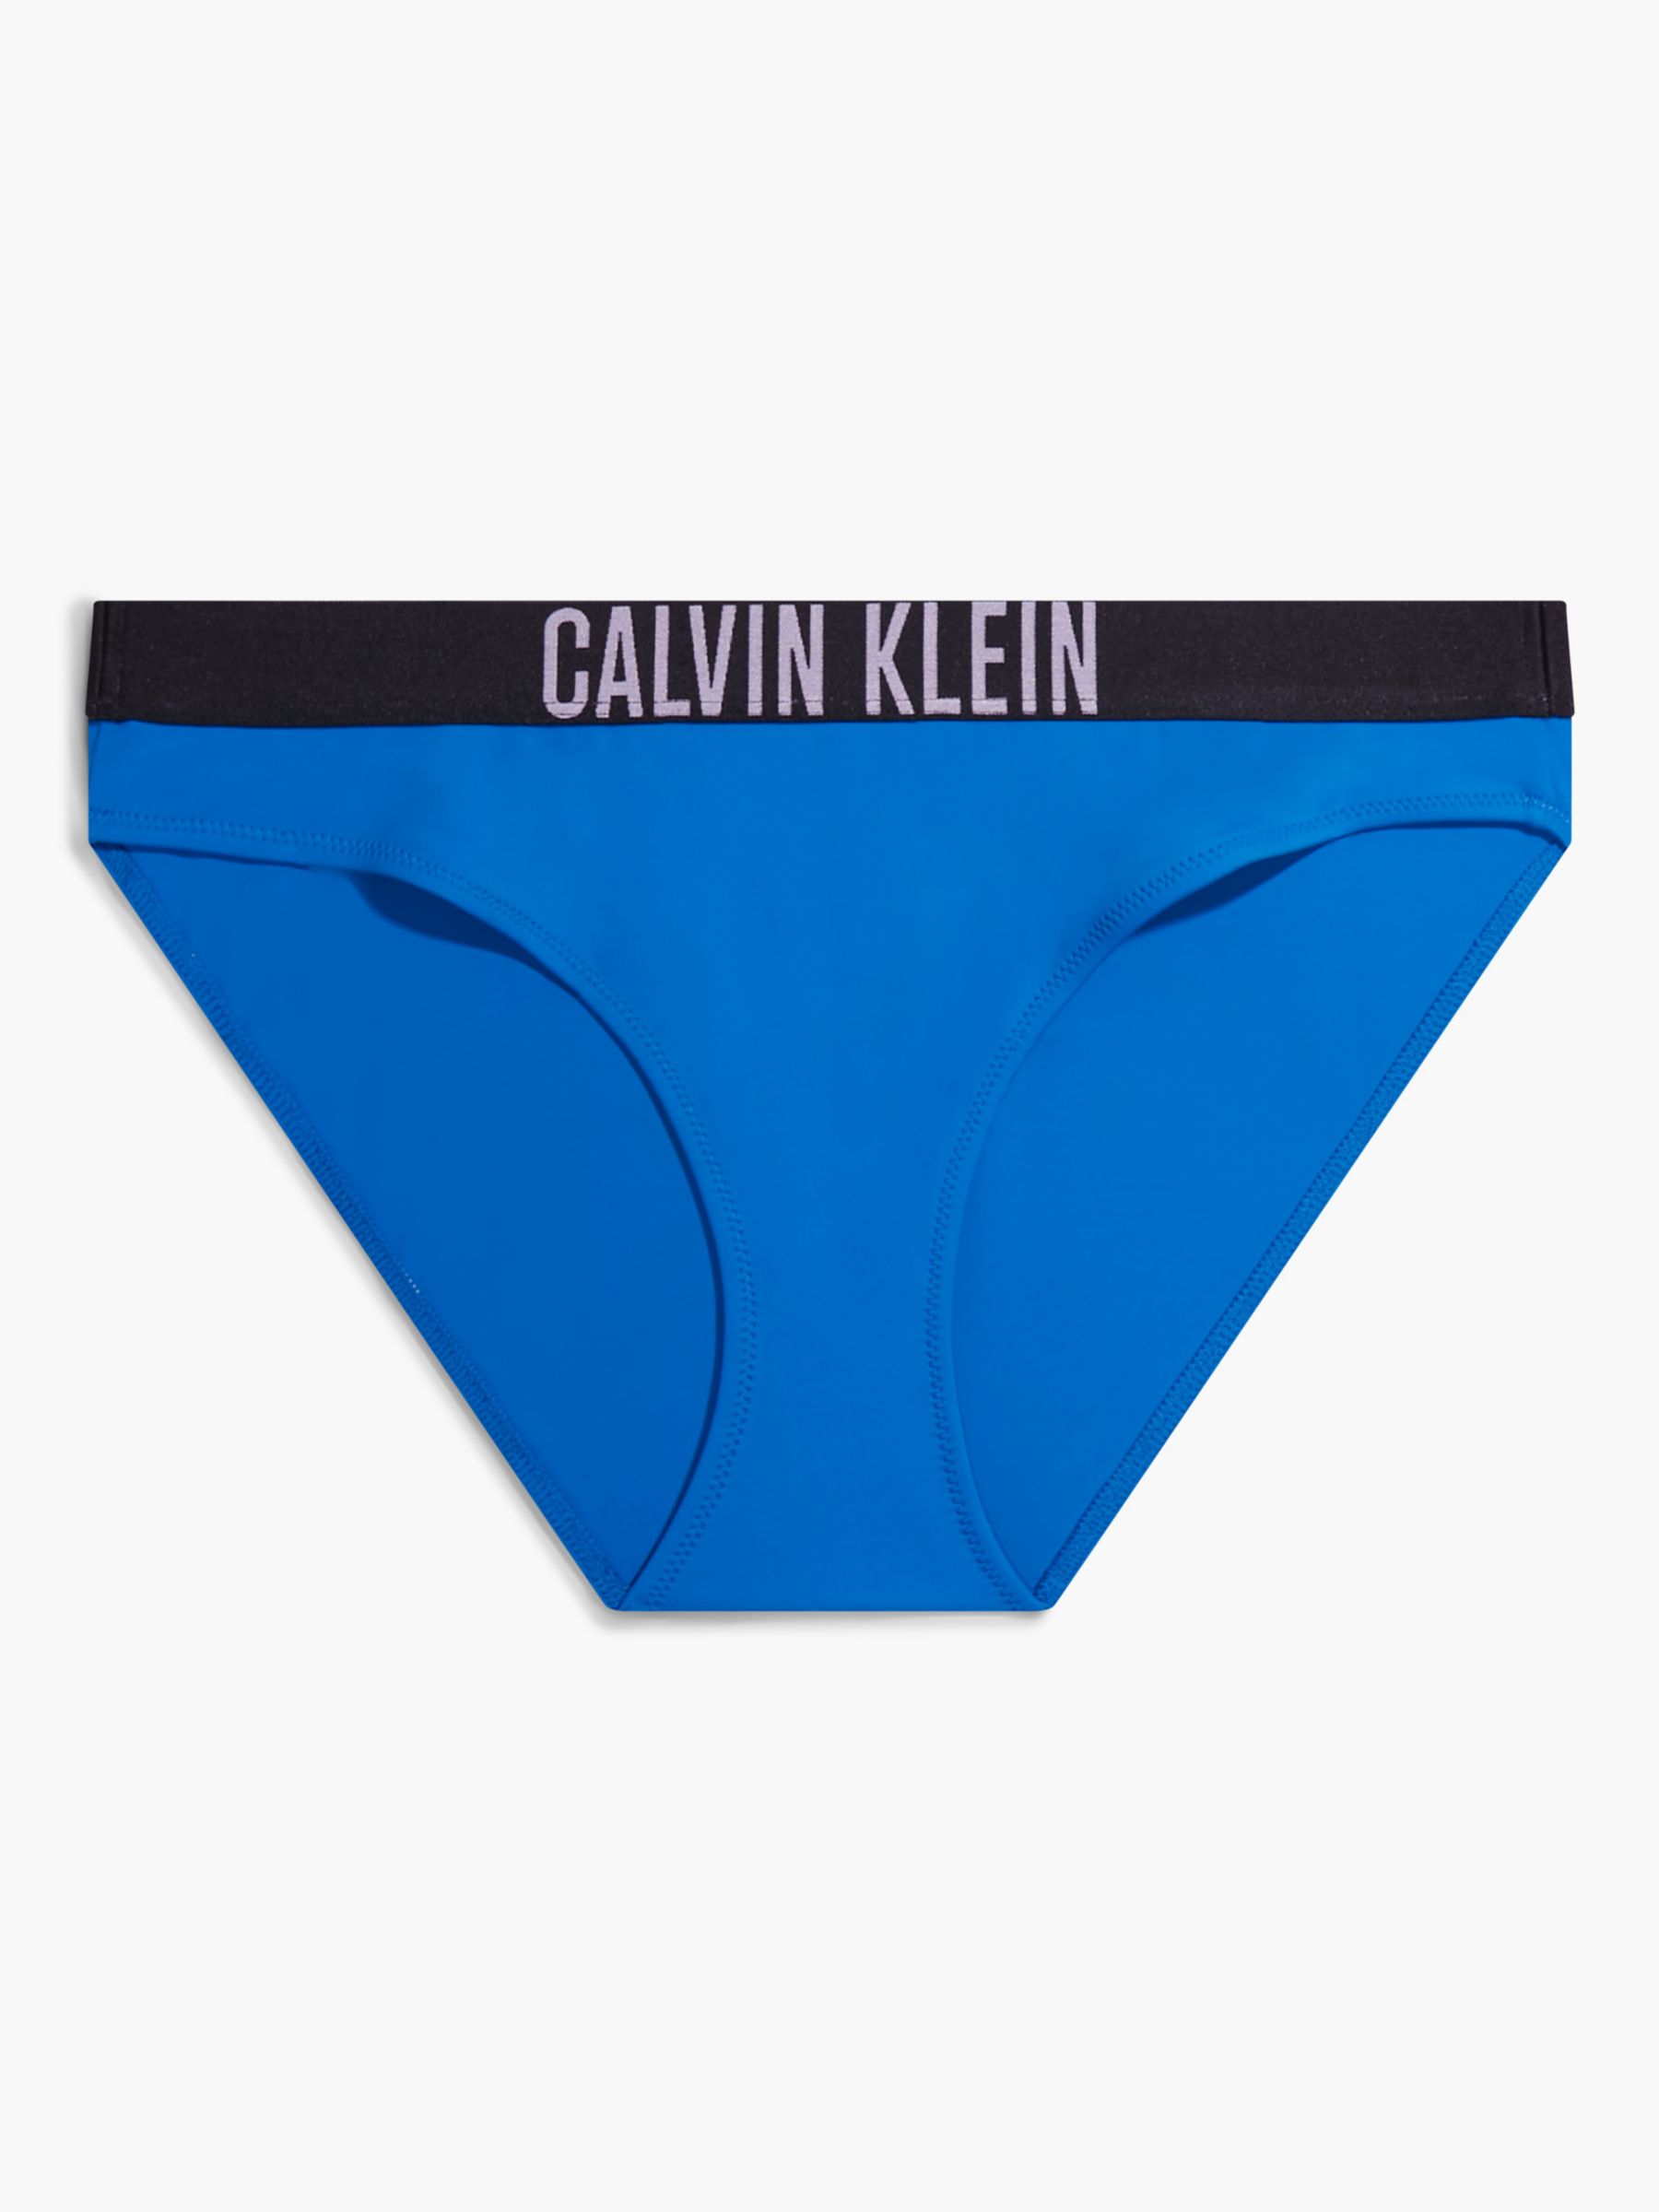 Calvin Klein Classic Bikini - Bikini bottoms 